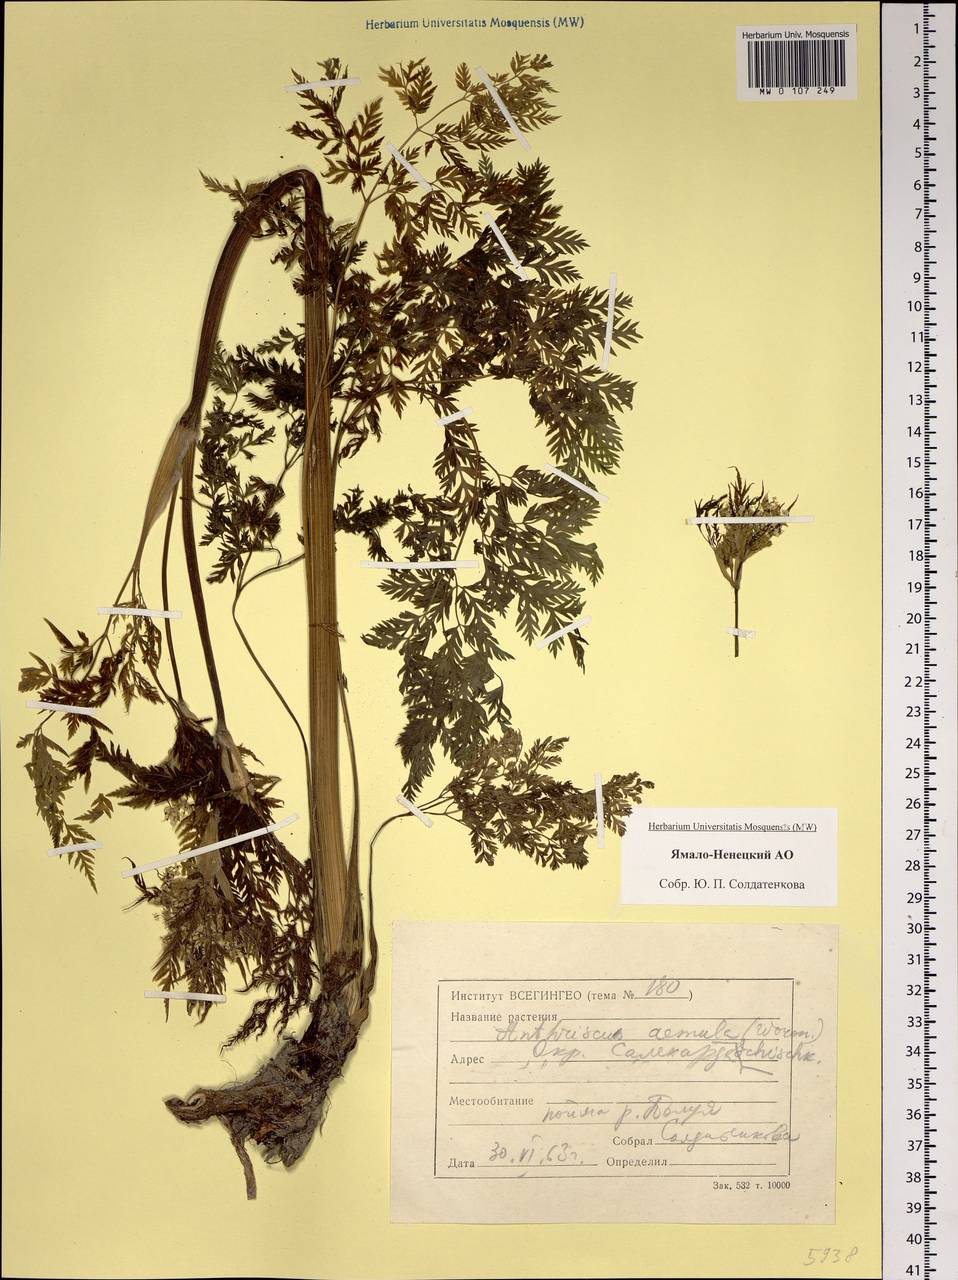 Anthriscus sylvestris subsp. sylvestris, Siberia, Western Siberia (S1) (Russia)